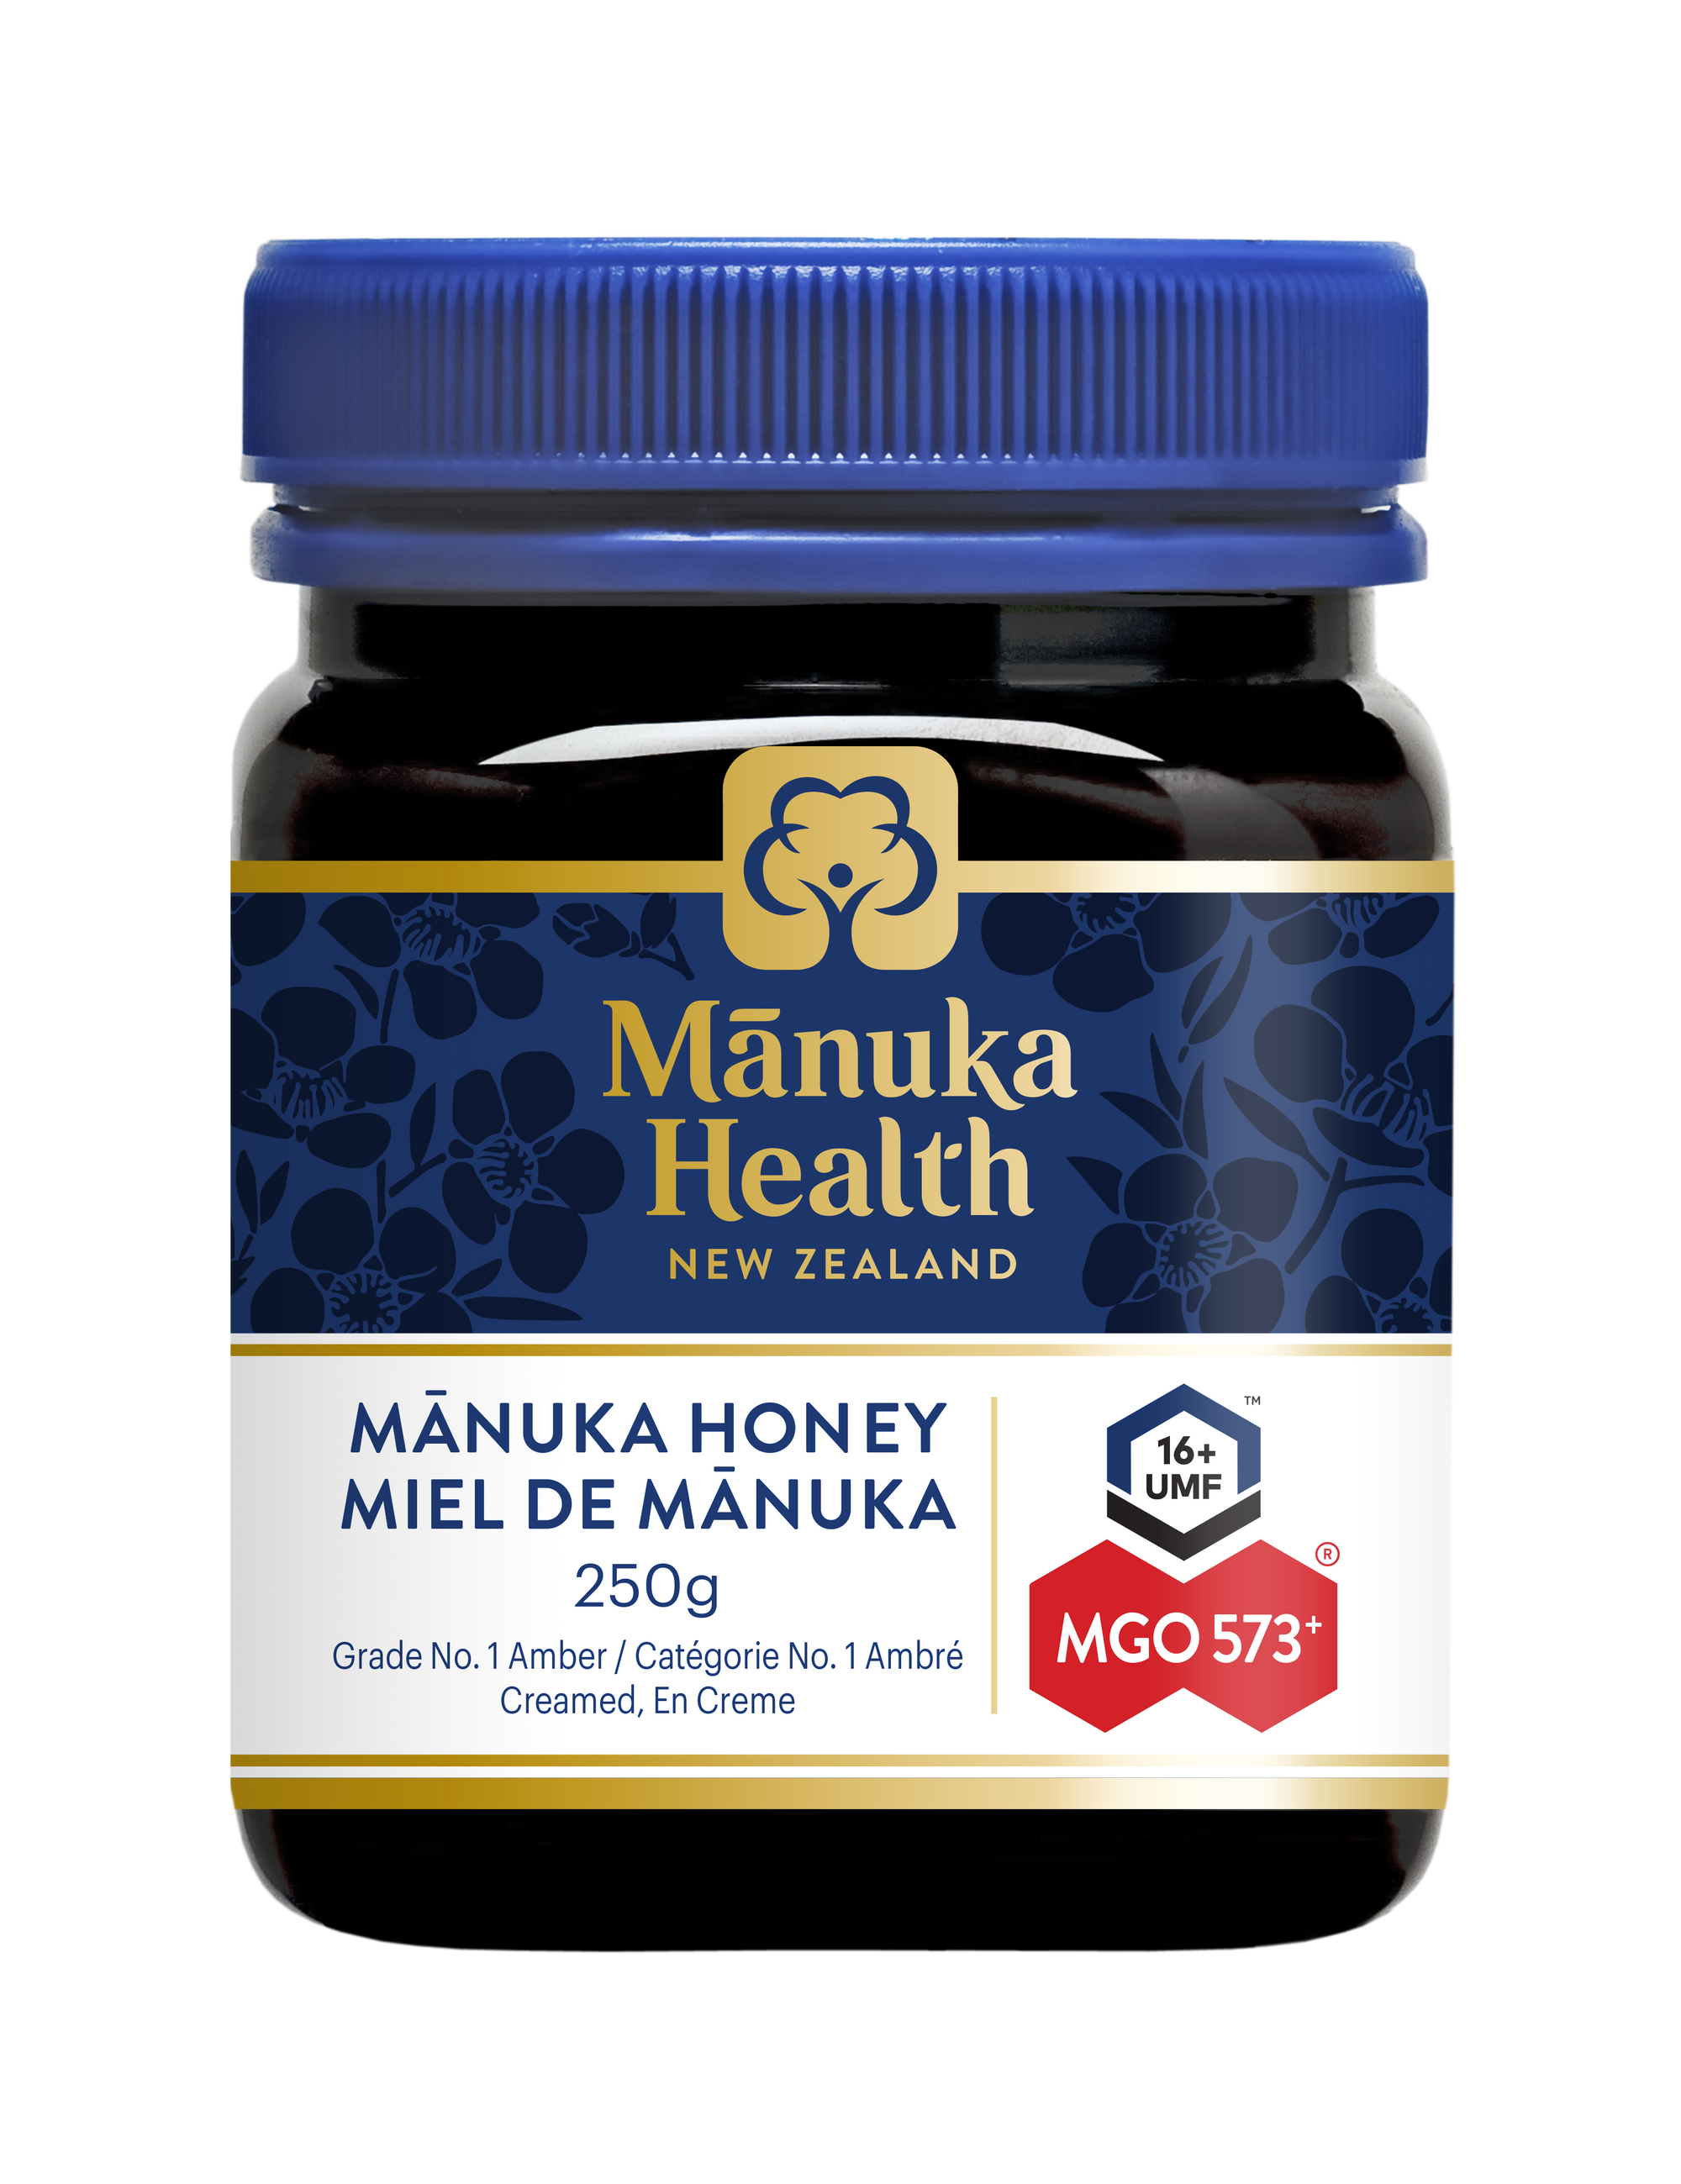 Manuka Honey MGO 573+ UMF 16+